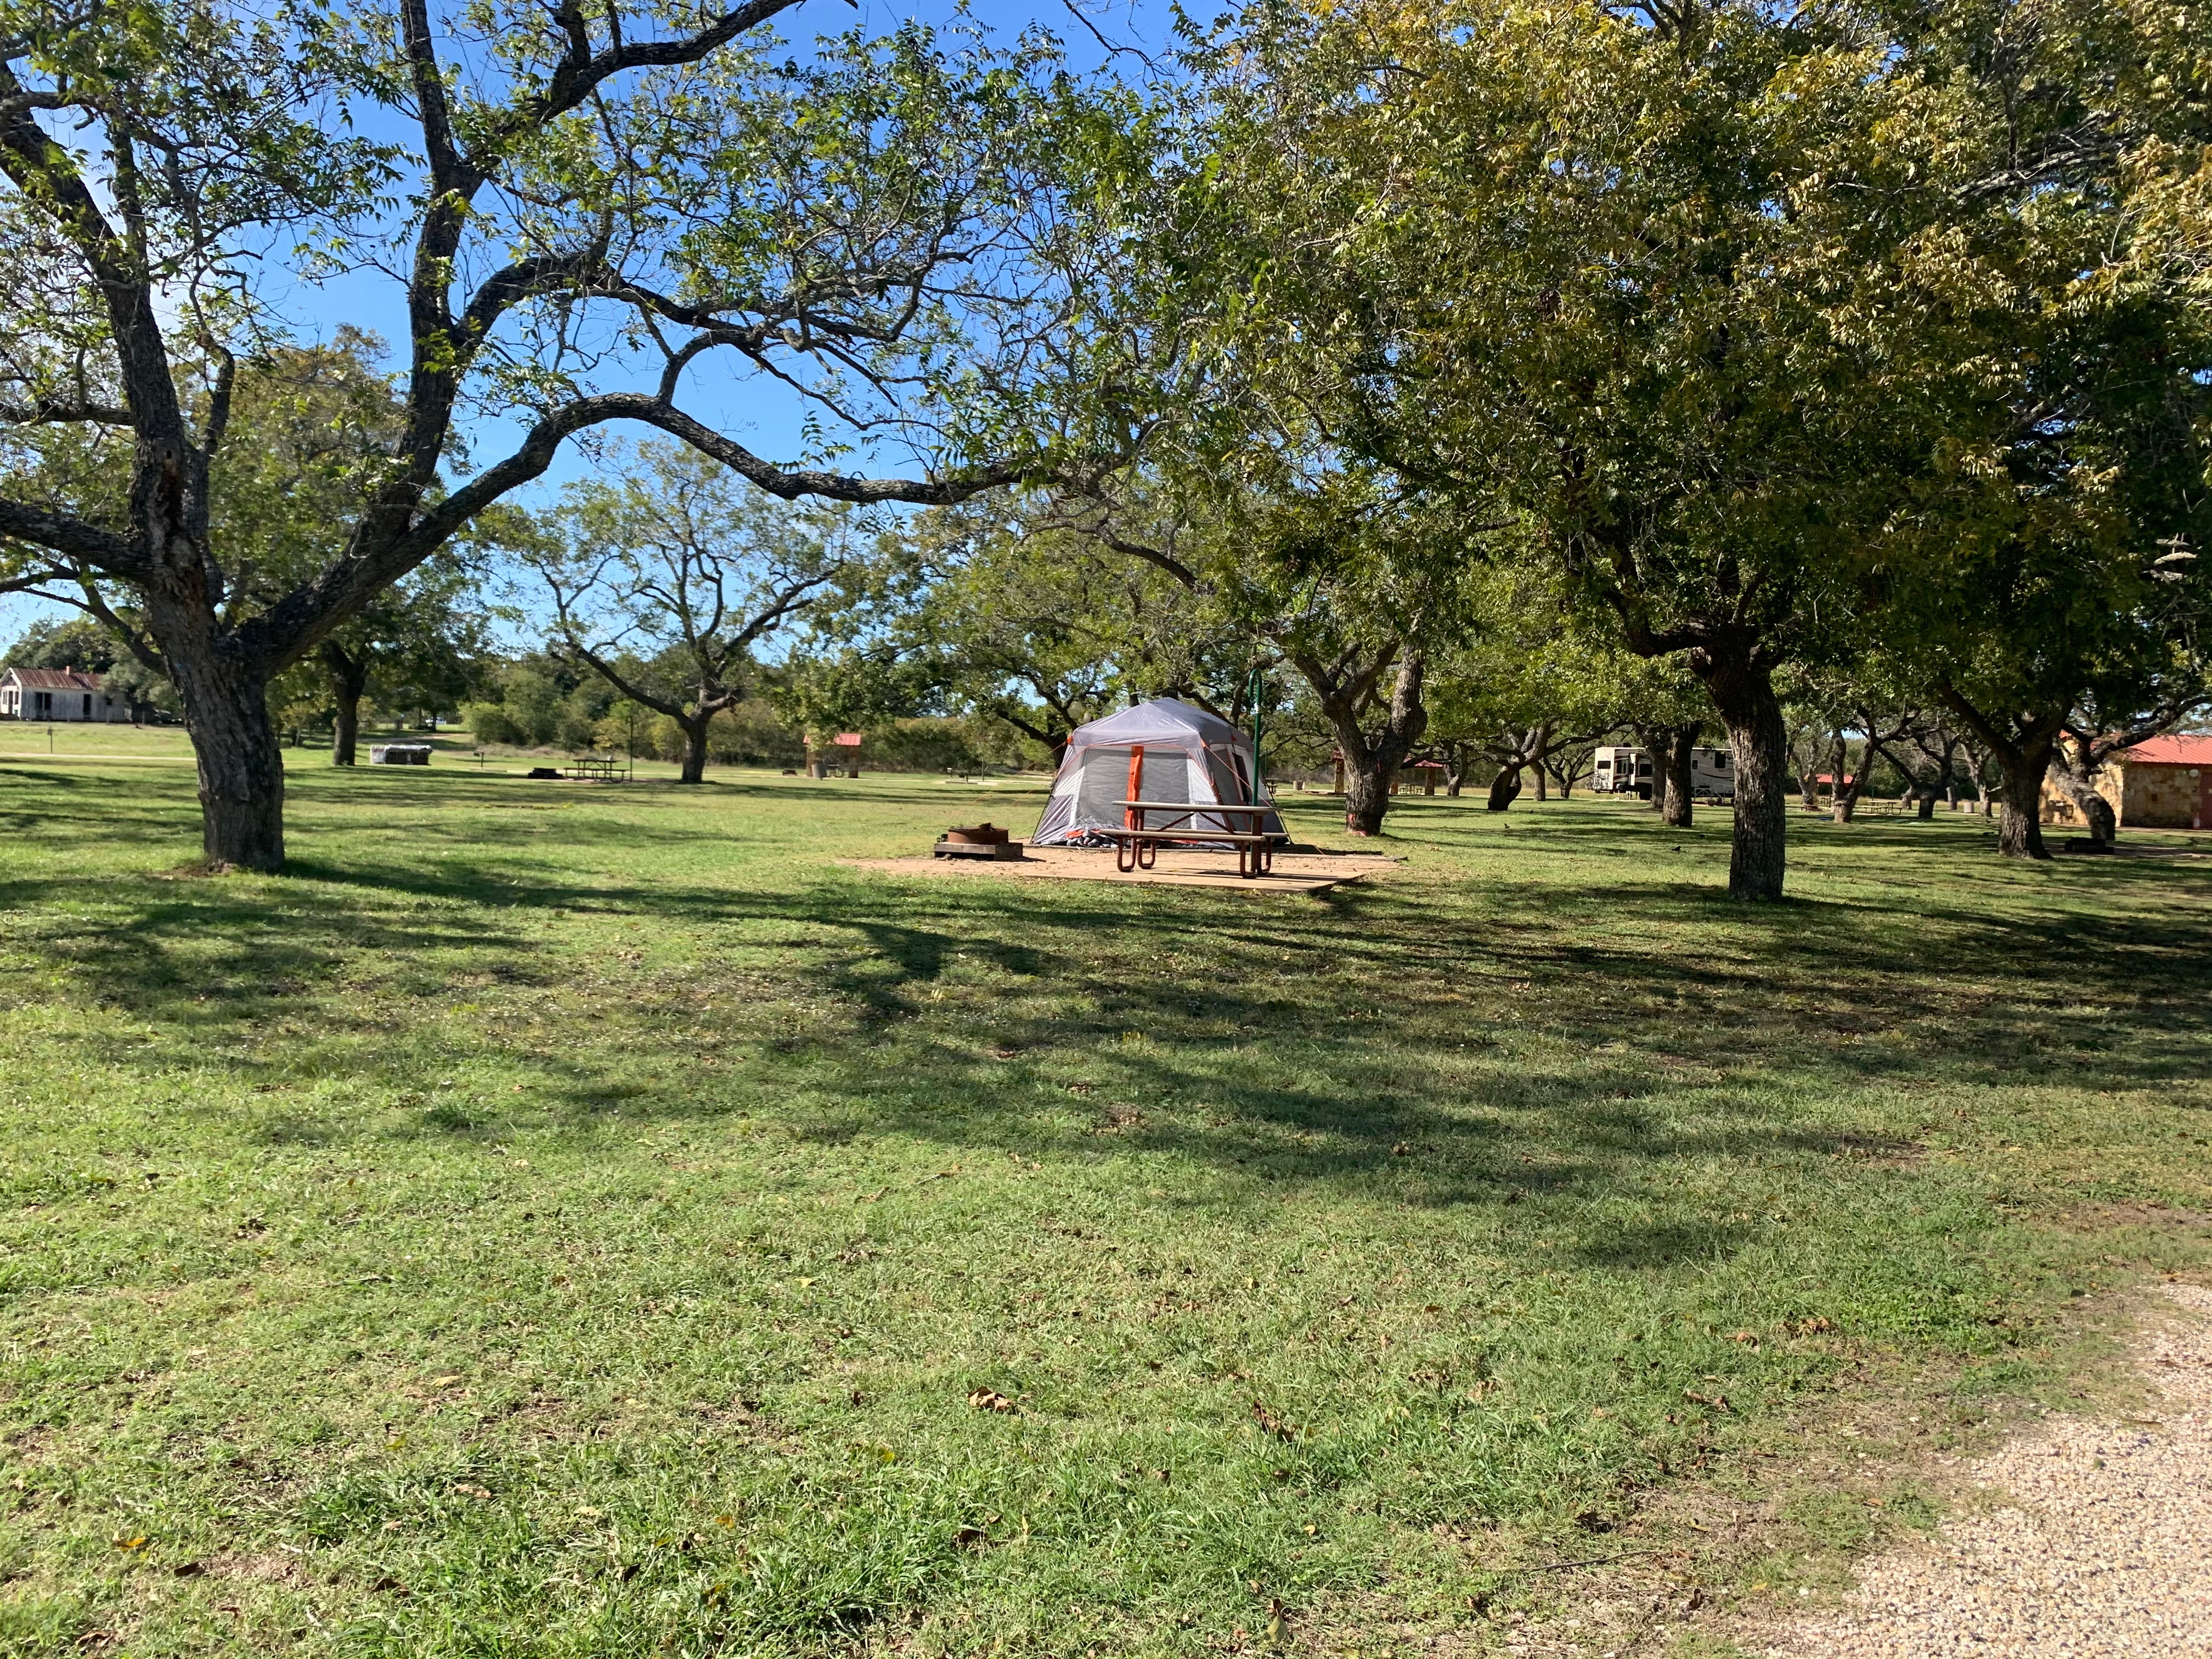 Tent Campsite